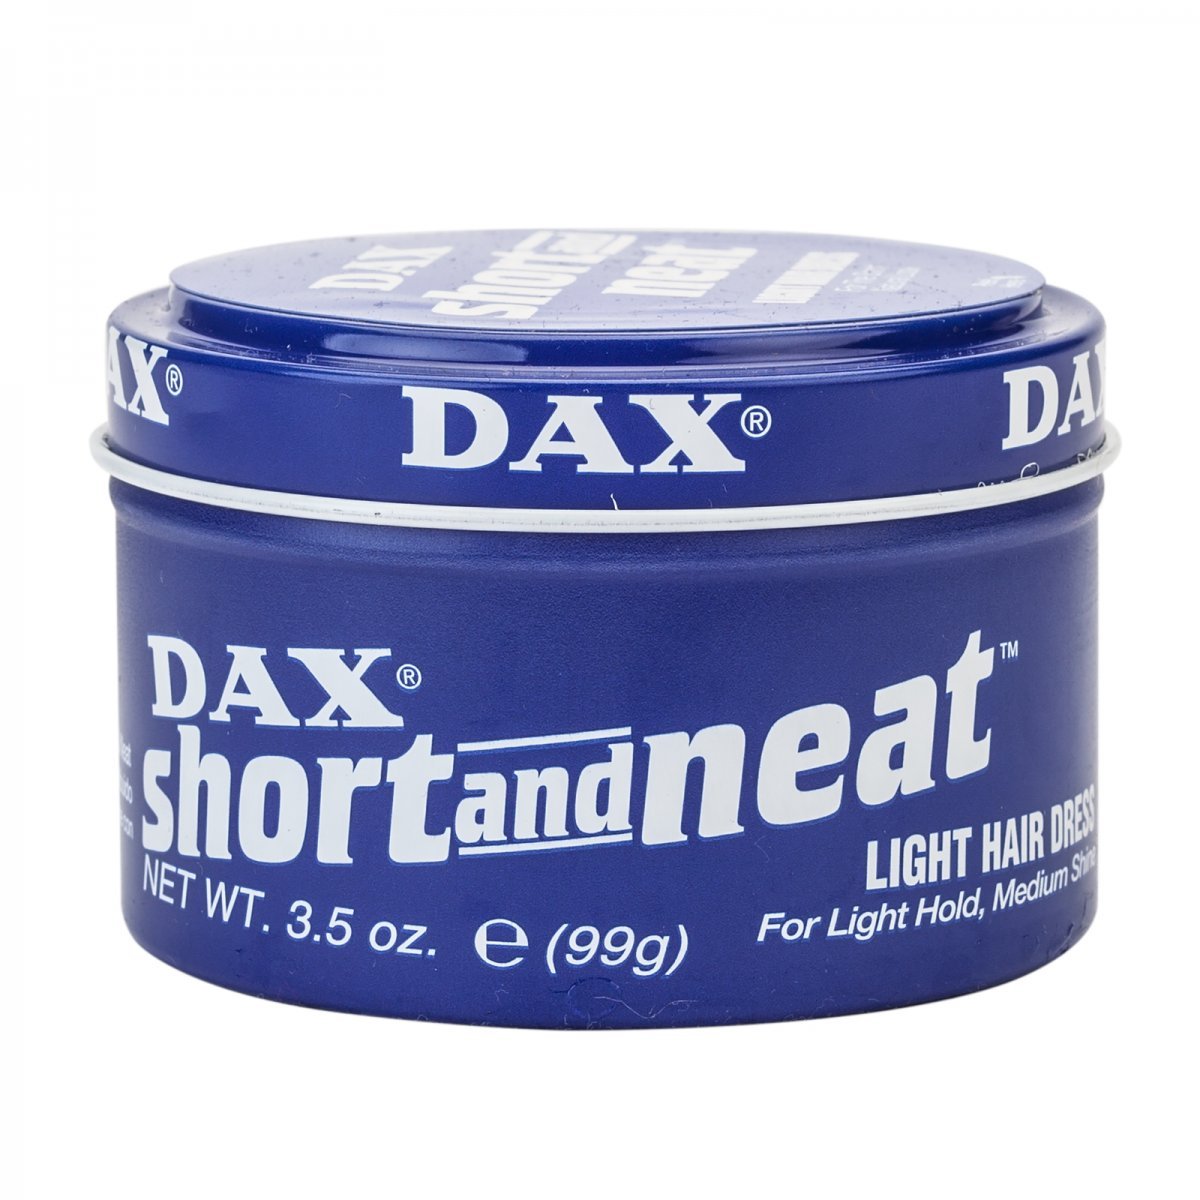 DAX Short and Neat - Southwestsix Cosmetics DAX Short and Neat Hair Wax DAX Southwestsix Cosmetics 077315009059 DAX Short and Neat